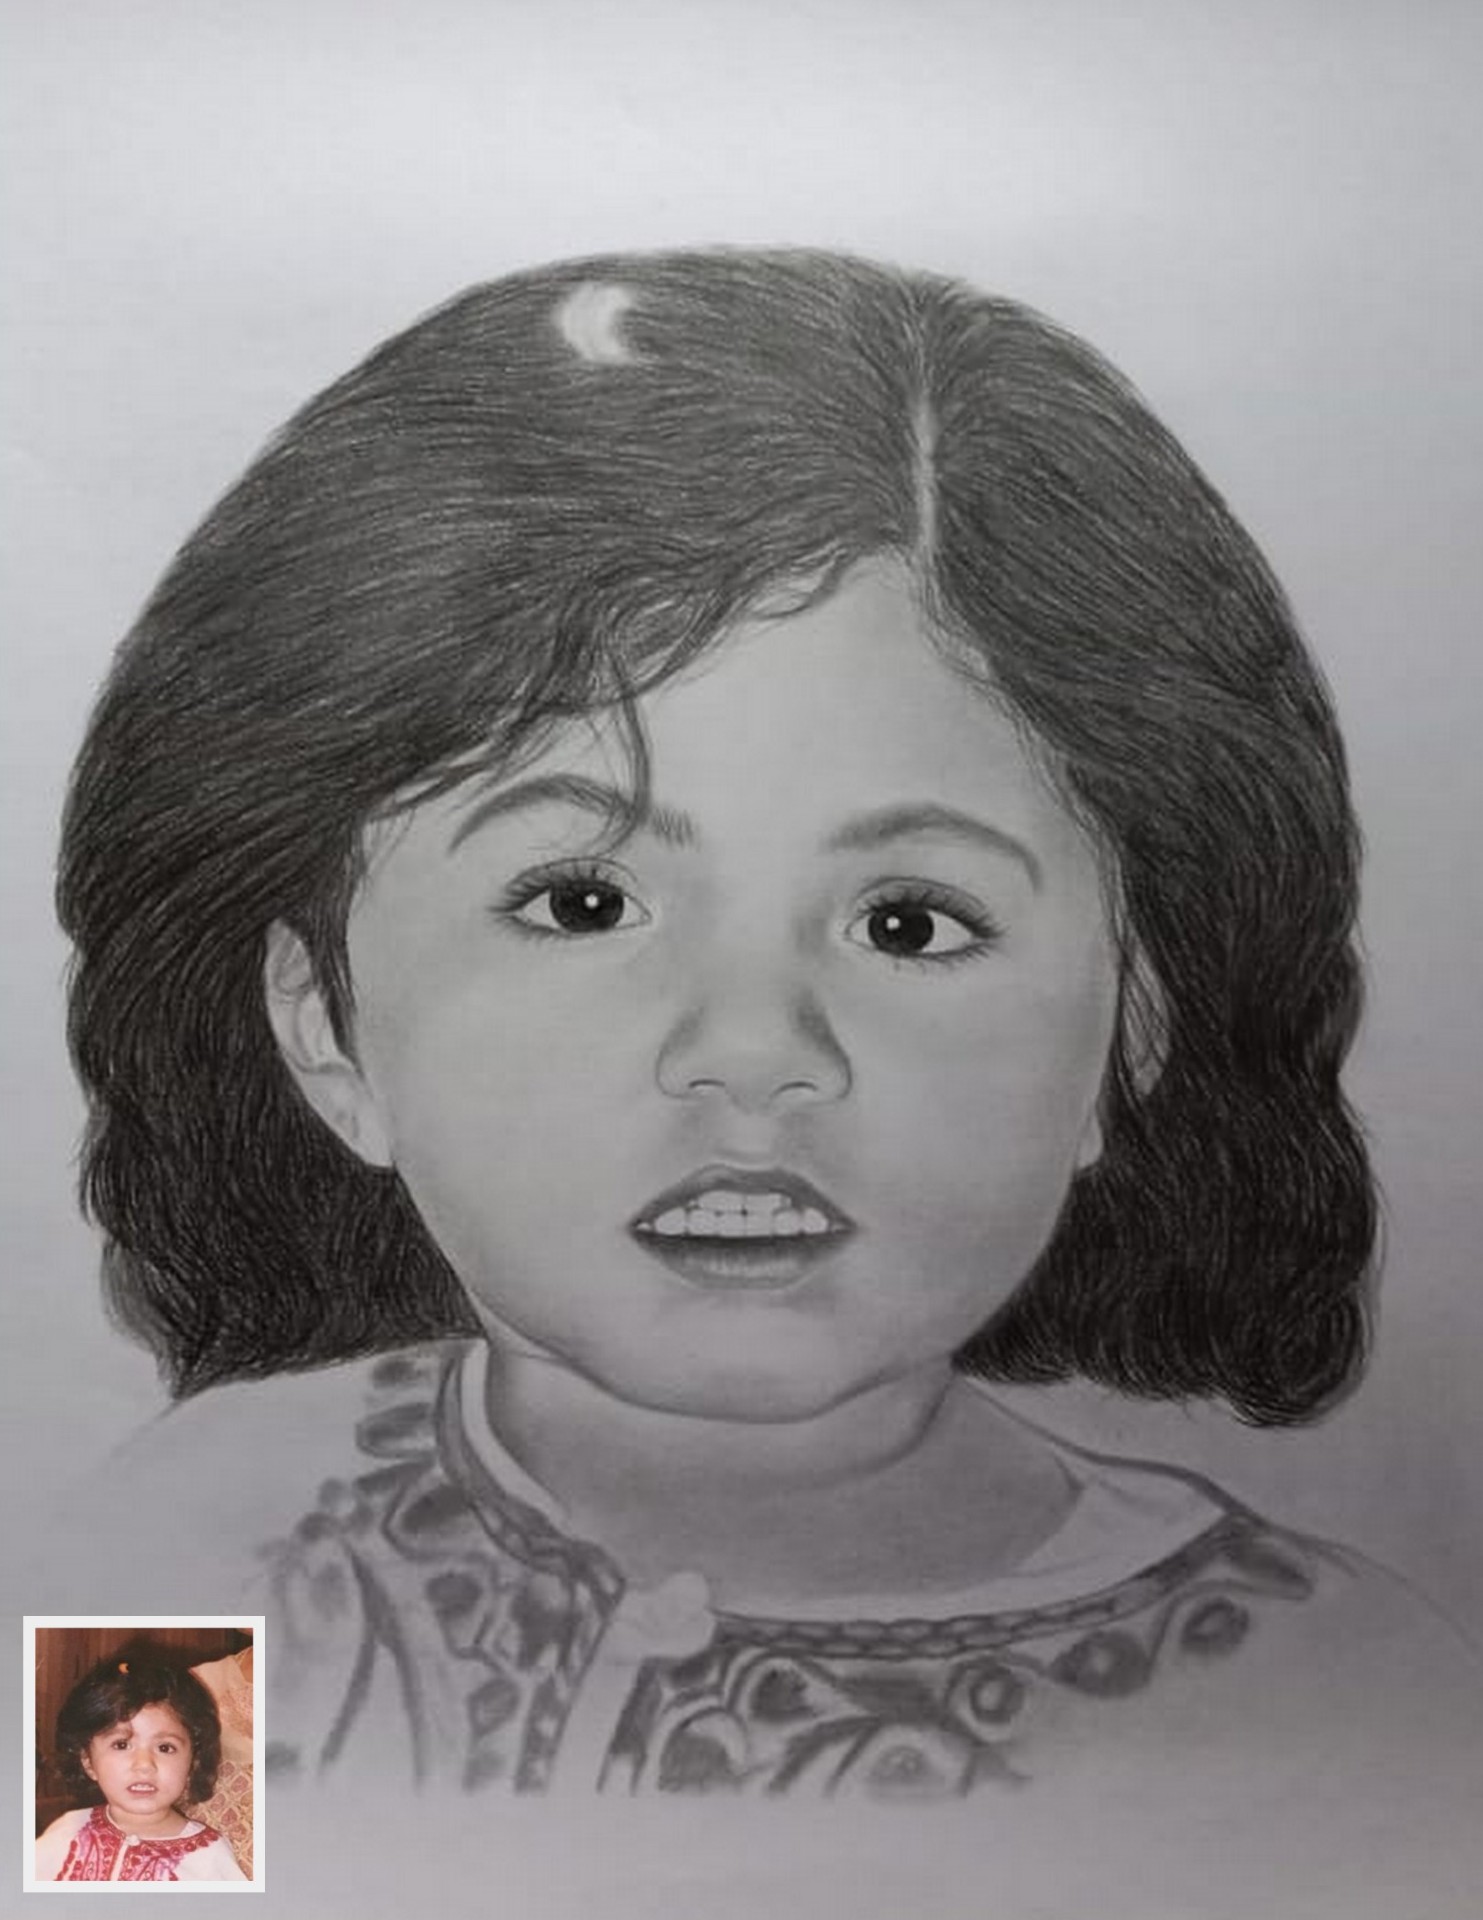 portrait sketch of baby girl, pencil sketch portrait, realistic portrait drawing, sketch portrait